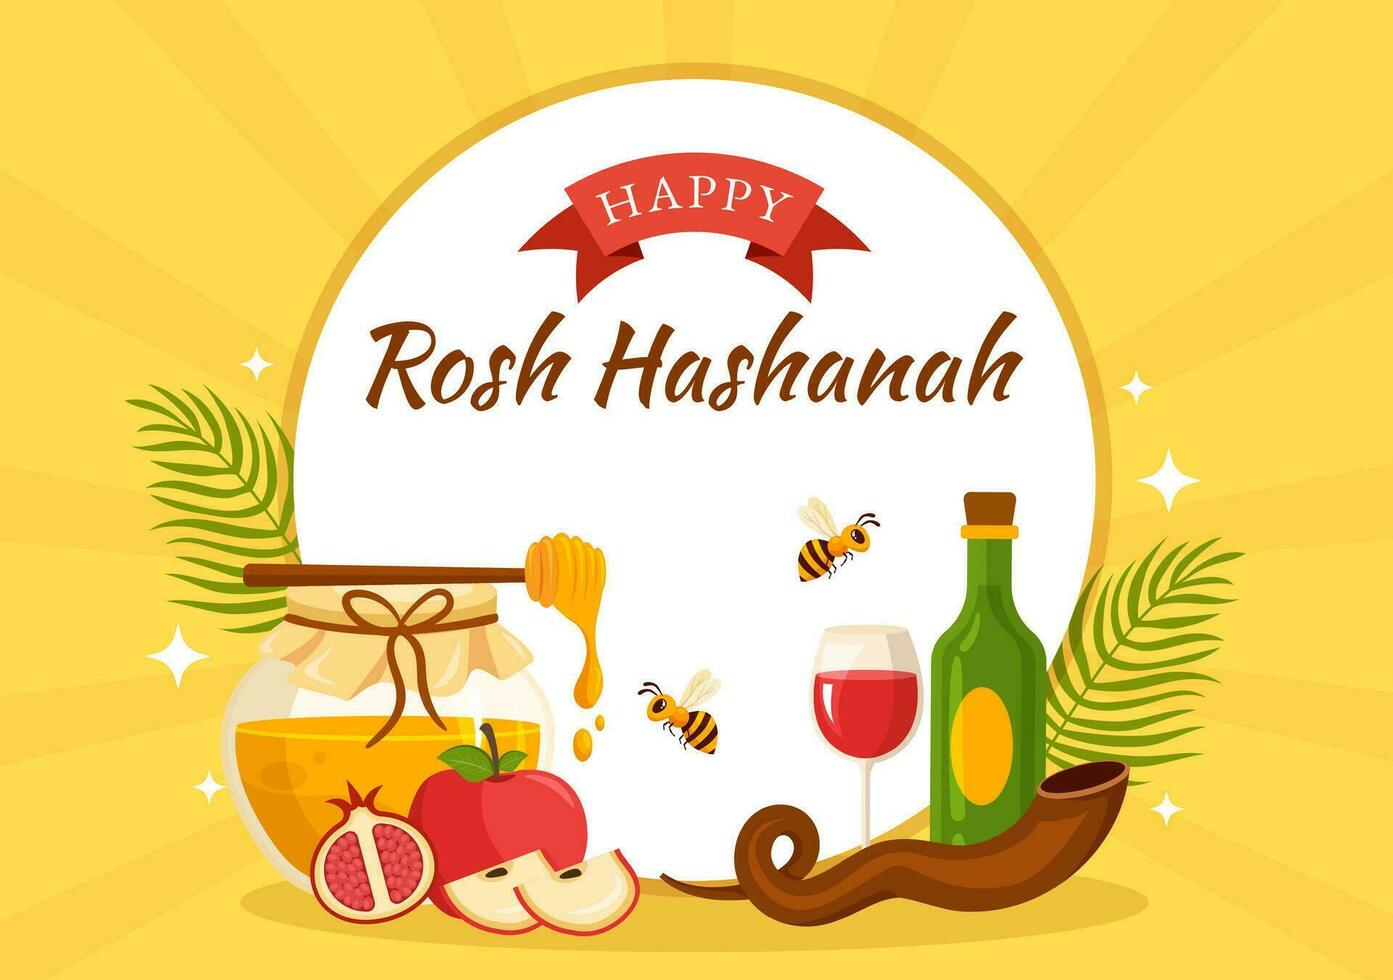 Lycklig rosh hashanah vektor illustration av jewish ny år Semester med äpple, granatäpple, honung och bi i platt tecknad serie hand dragen mallar